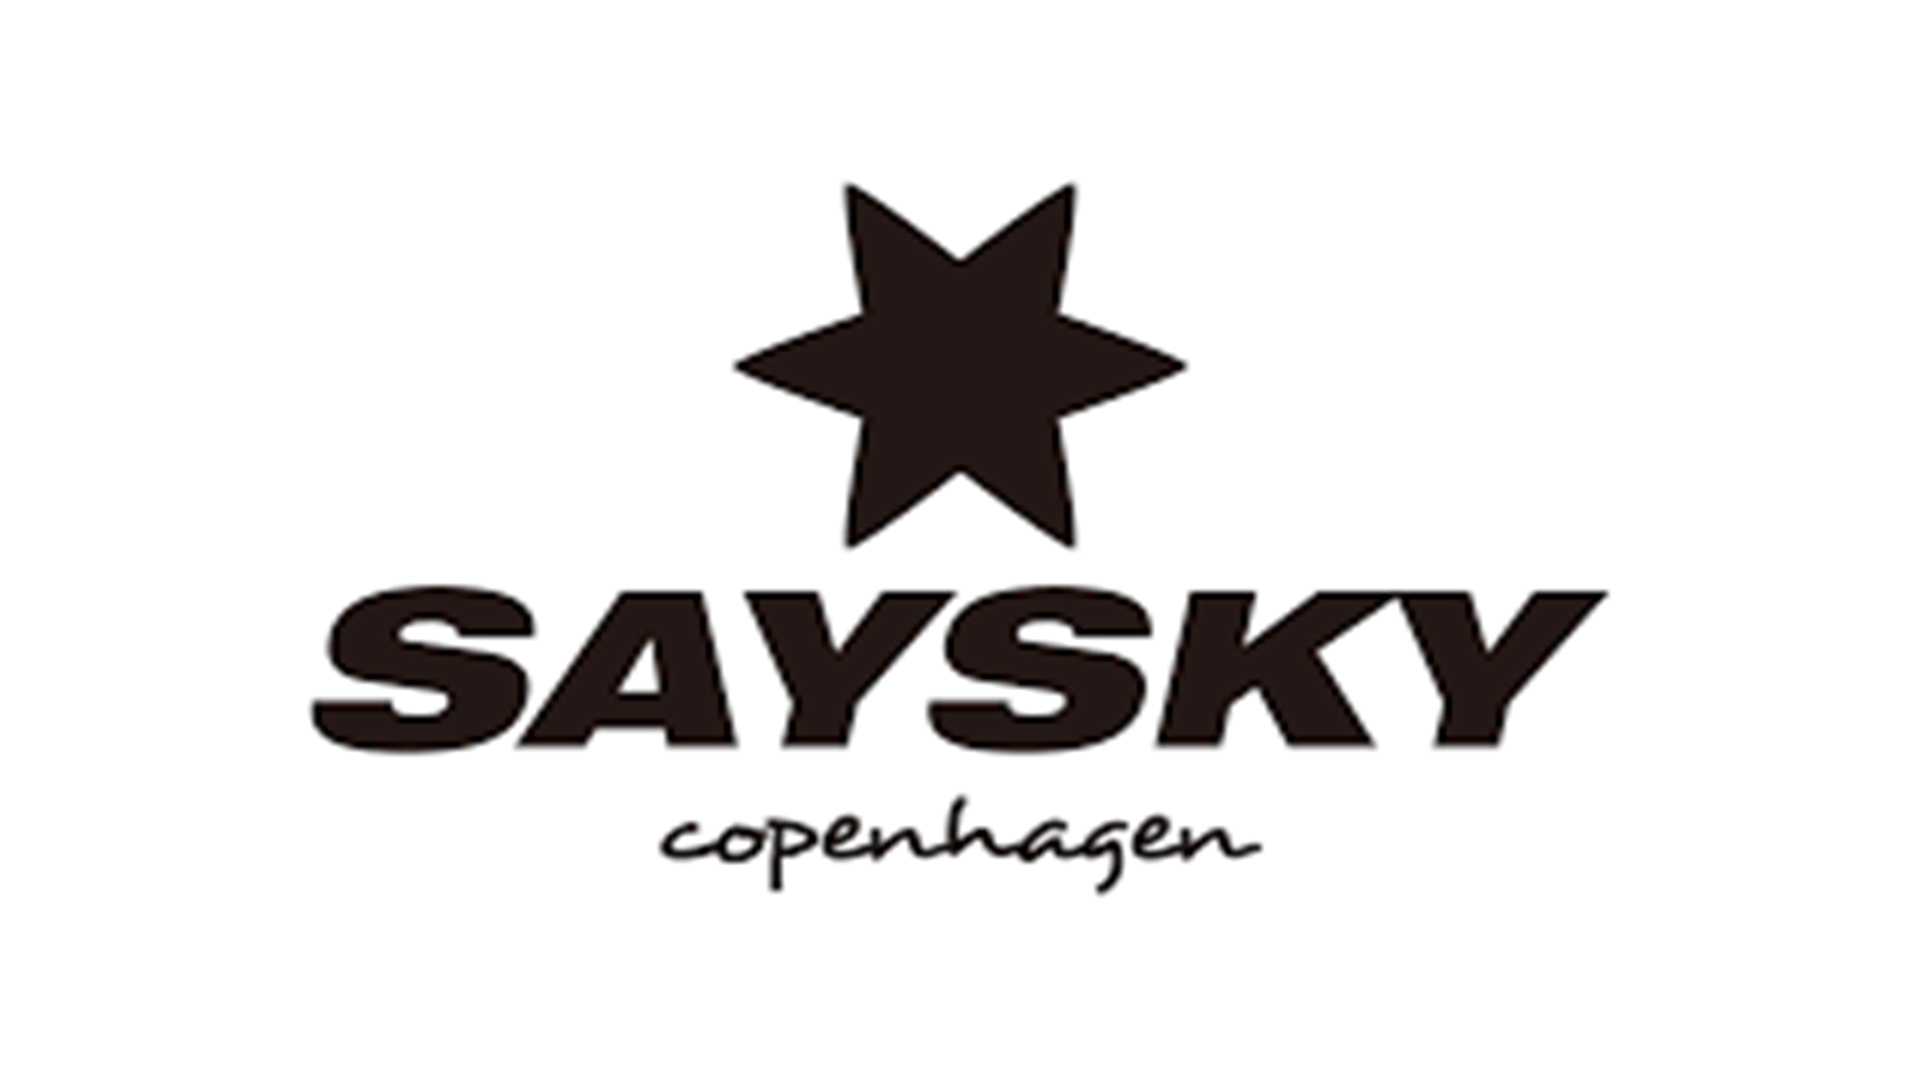 Saysky